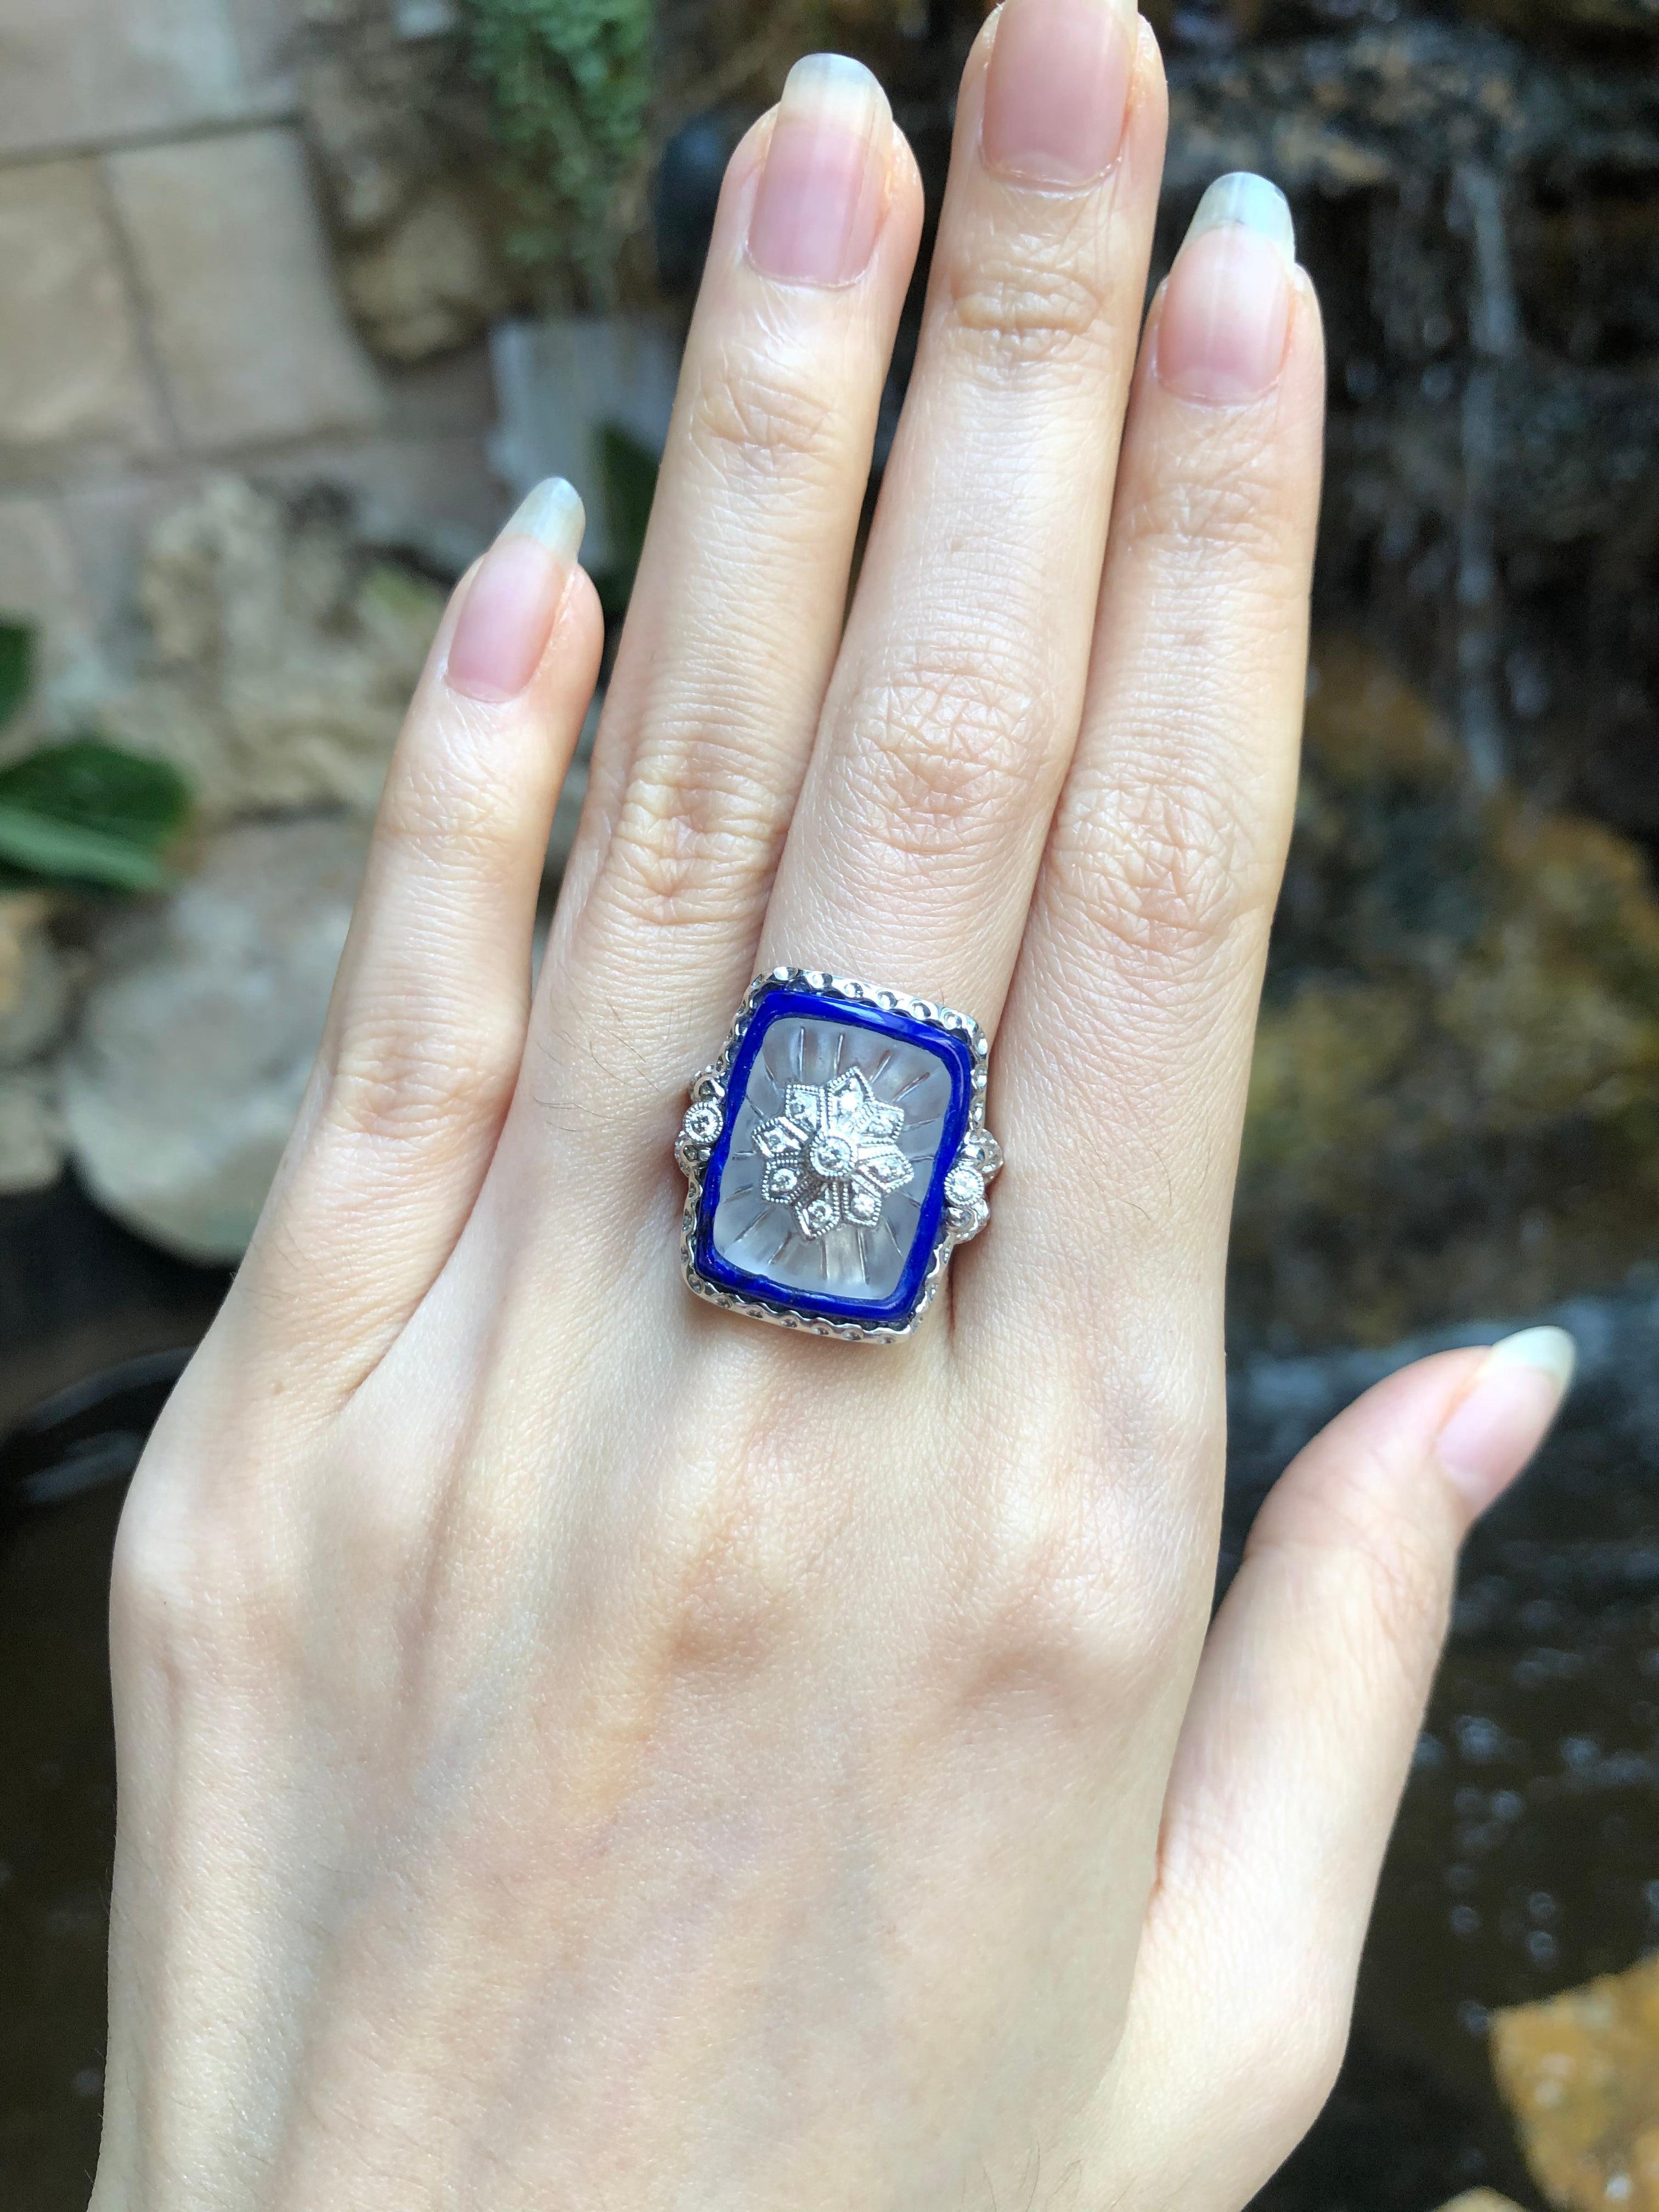 Lapis Lazuli, Quartz, Diamond 0.16 carat Ring set in 18 Karat White Gold Settings

Width:  1.9 cm 
Length: 2.1 cm
Ring Size: 54
Total Weight: 11.91 grams

